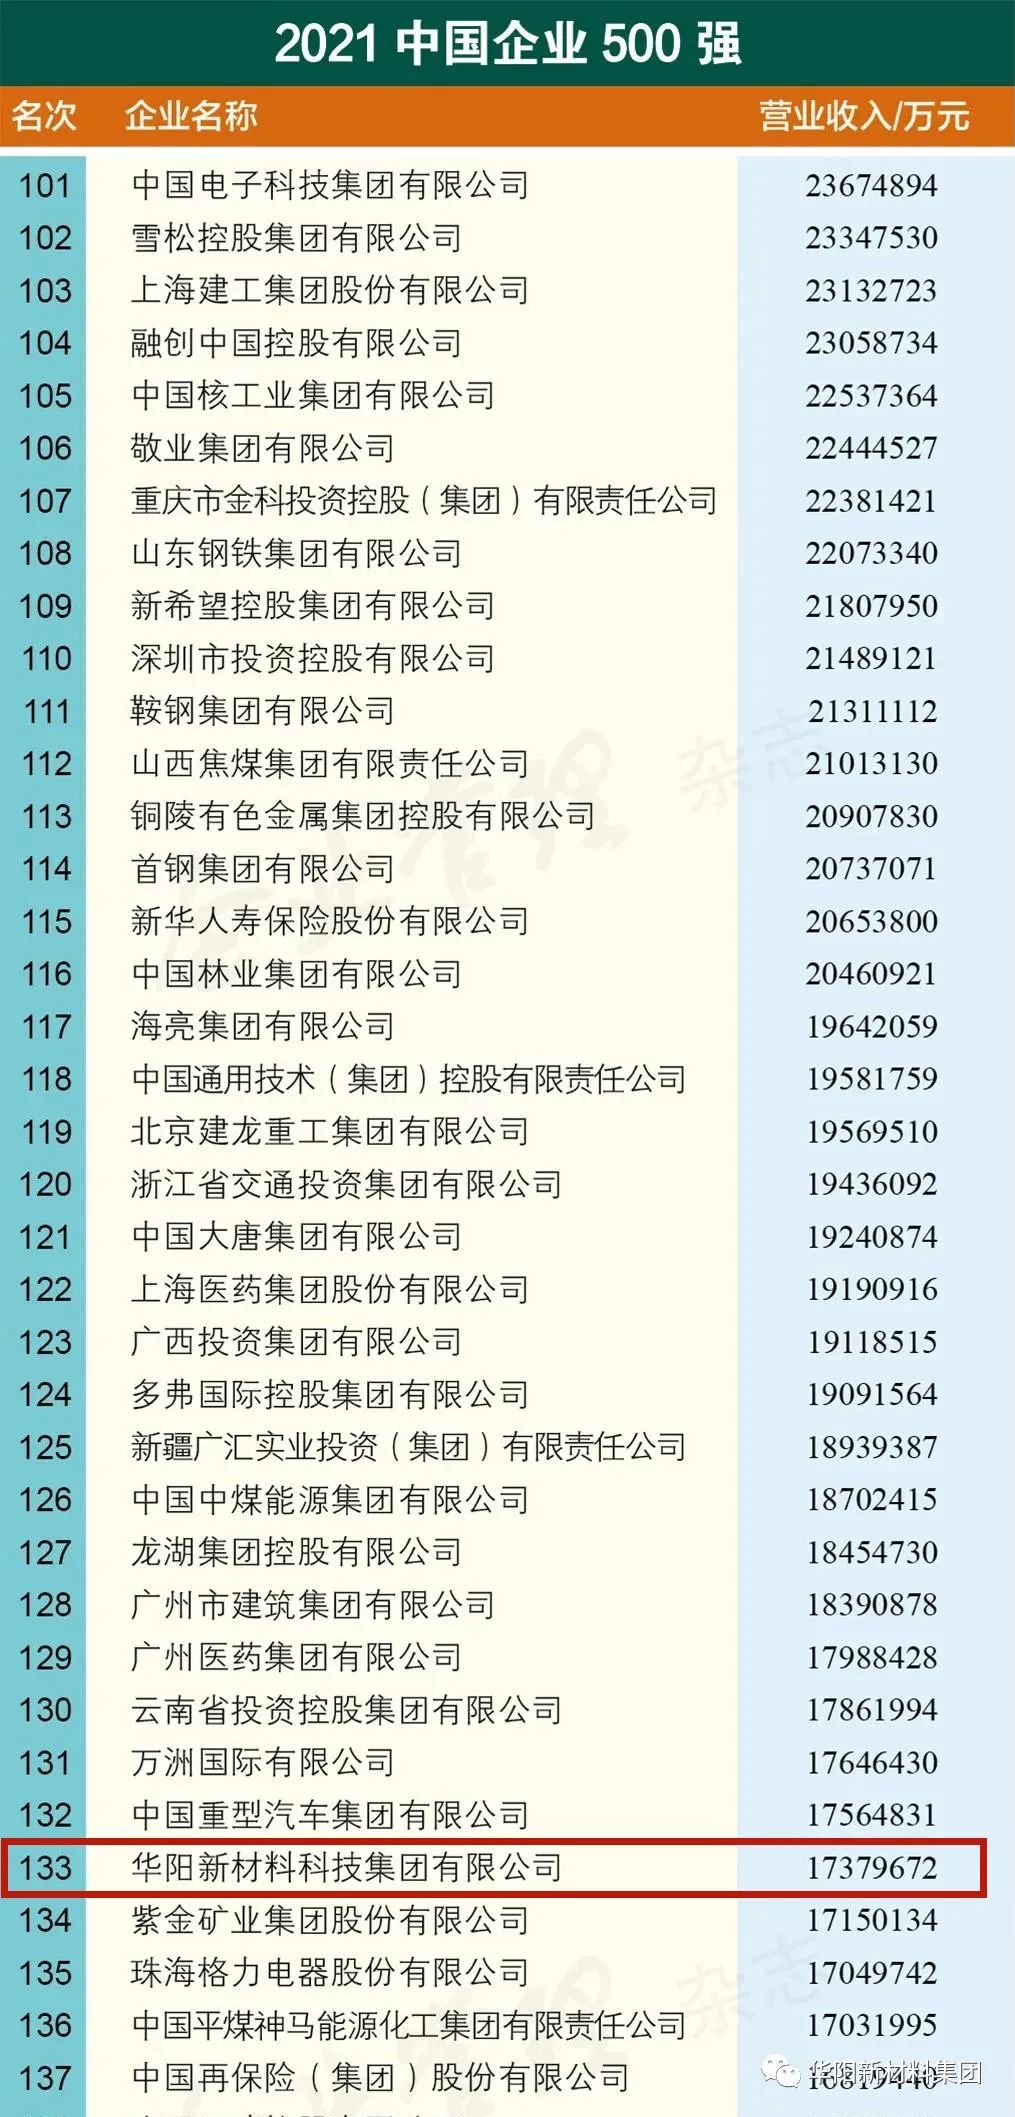 華陽集團位列2021中國企業500強第133位